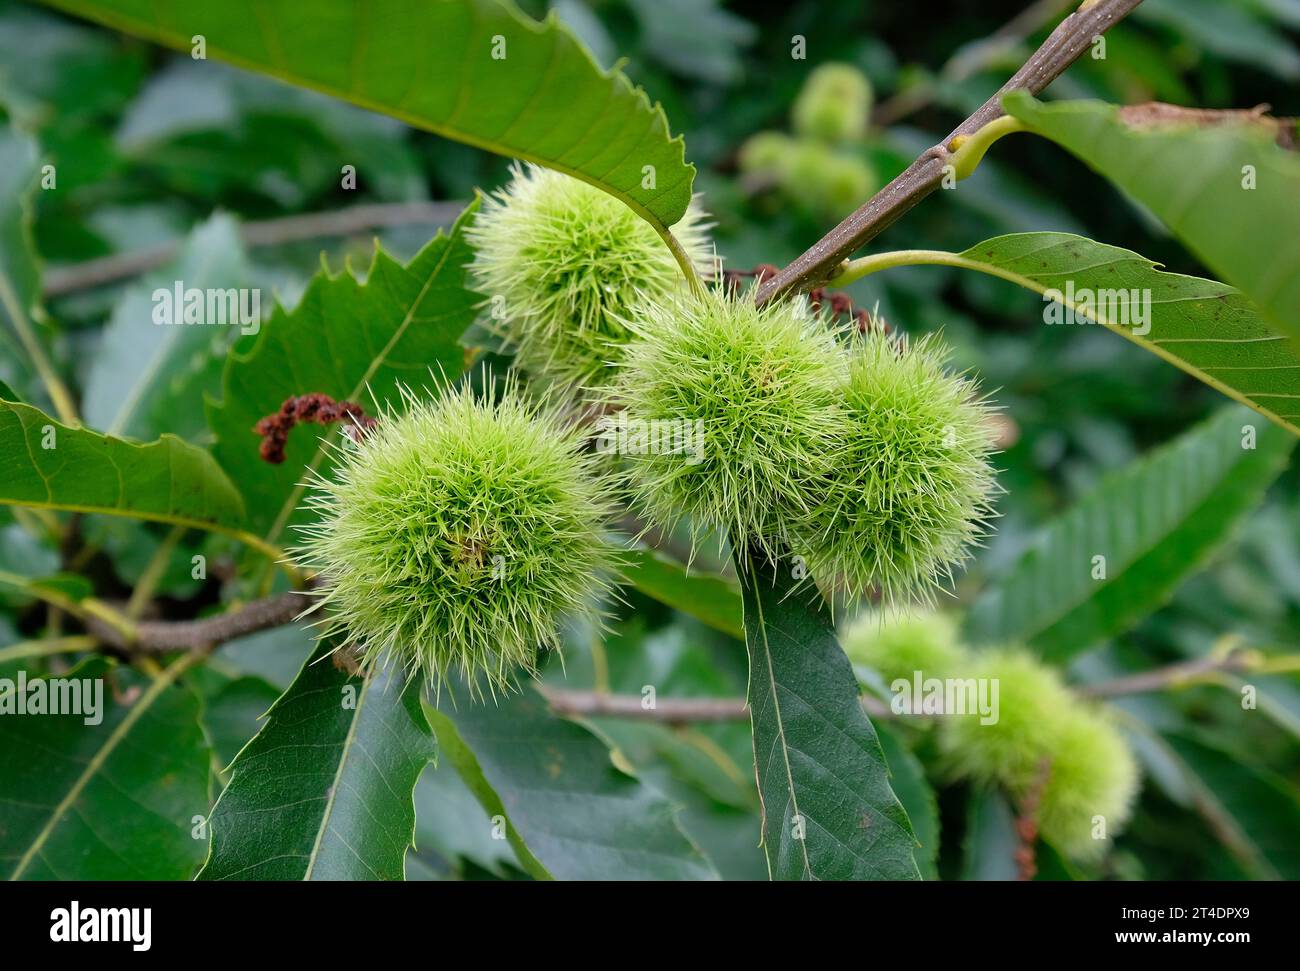 dolci baccelli di semi di castagno sull'albero, norfolk, inghilterra Foto Stock